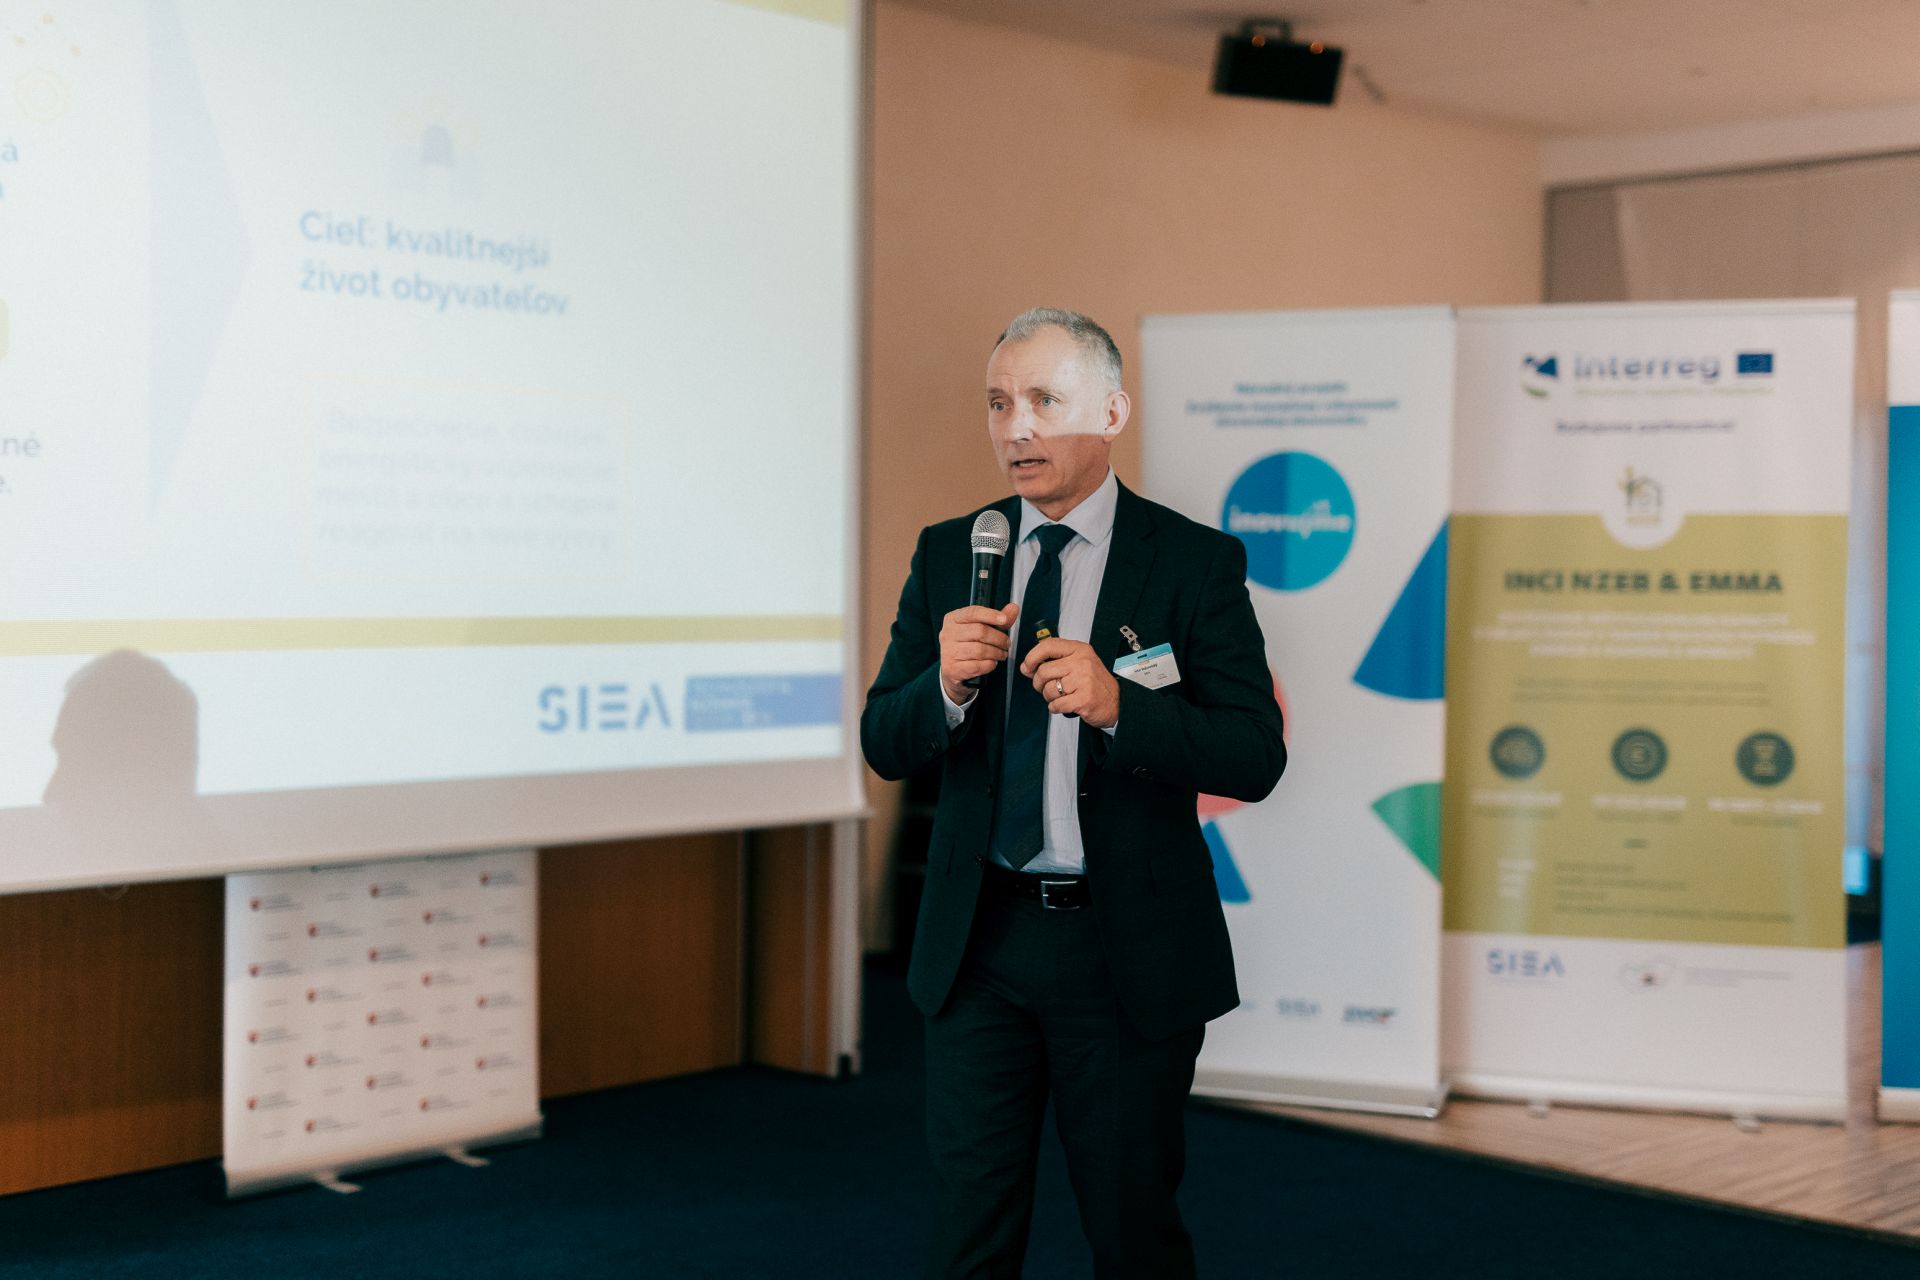 Slovensko na ceste k Smart Cities Bratislava 